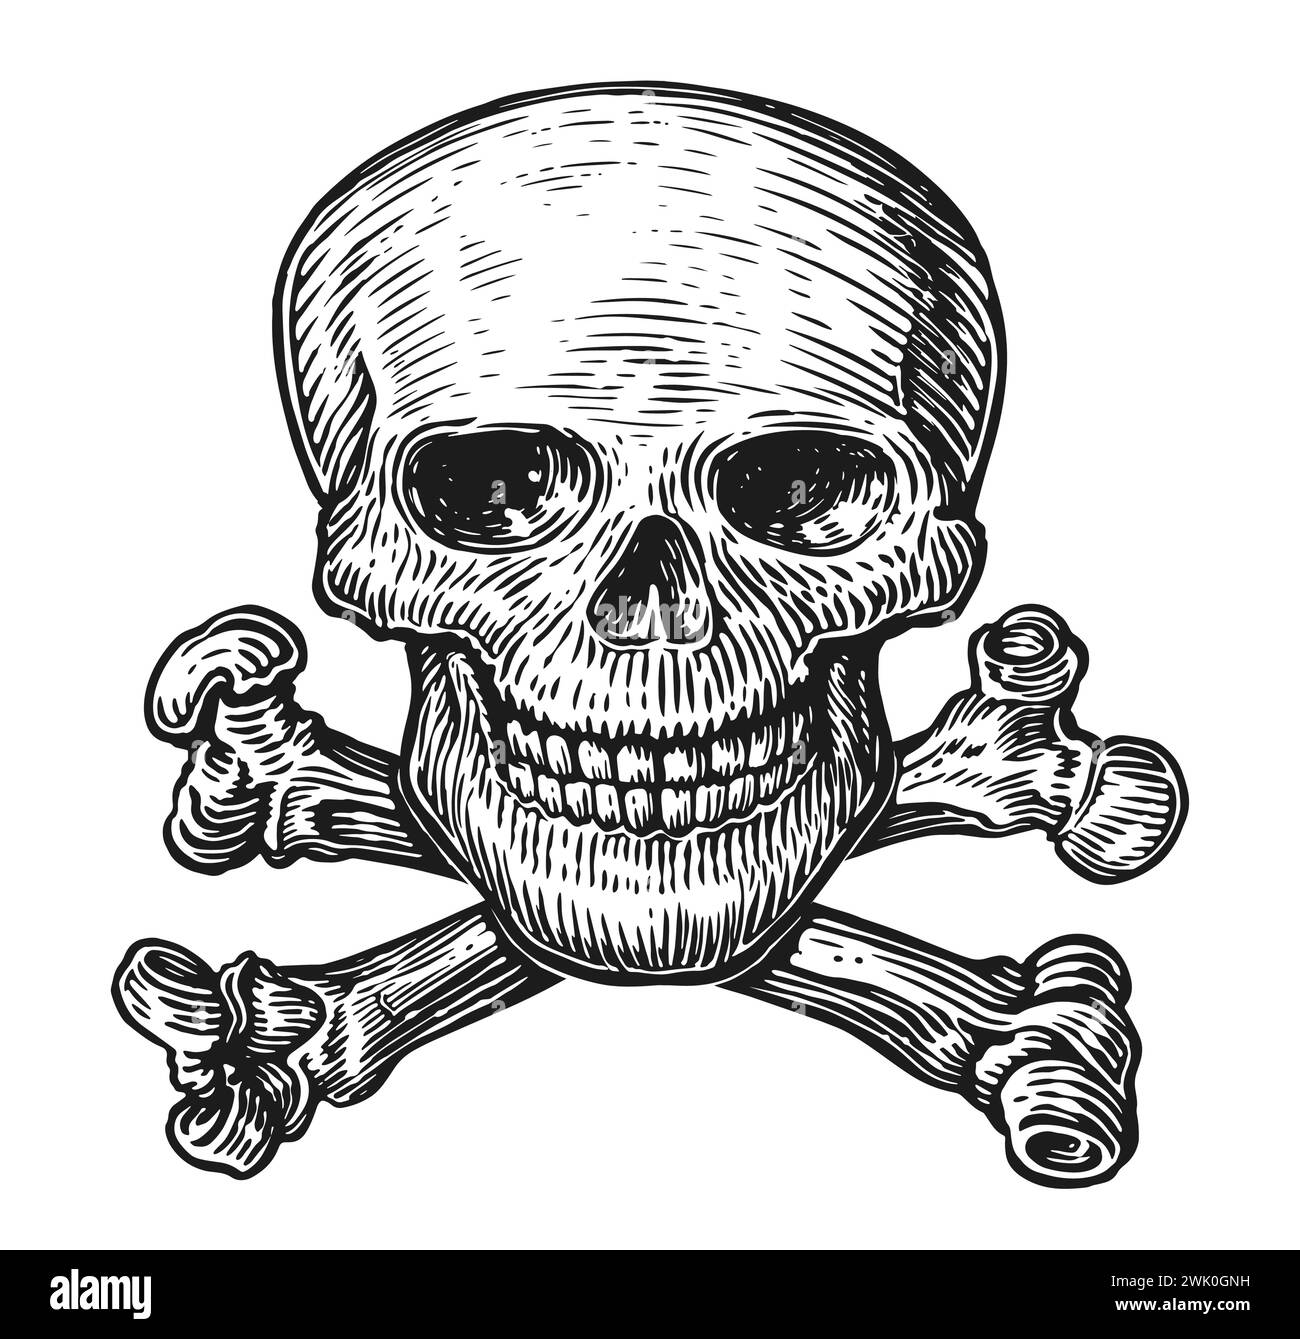 Crâne humain avec des os croisés. Noir et blanc, illustration vectorielle isolée sur fond blanc Illustration de Vecteur